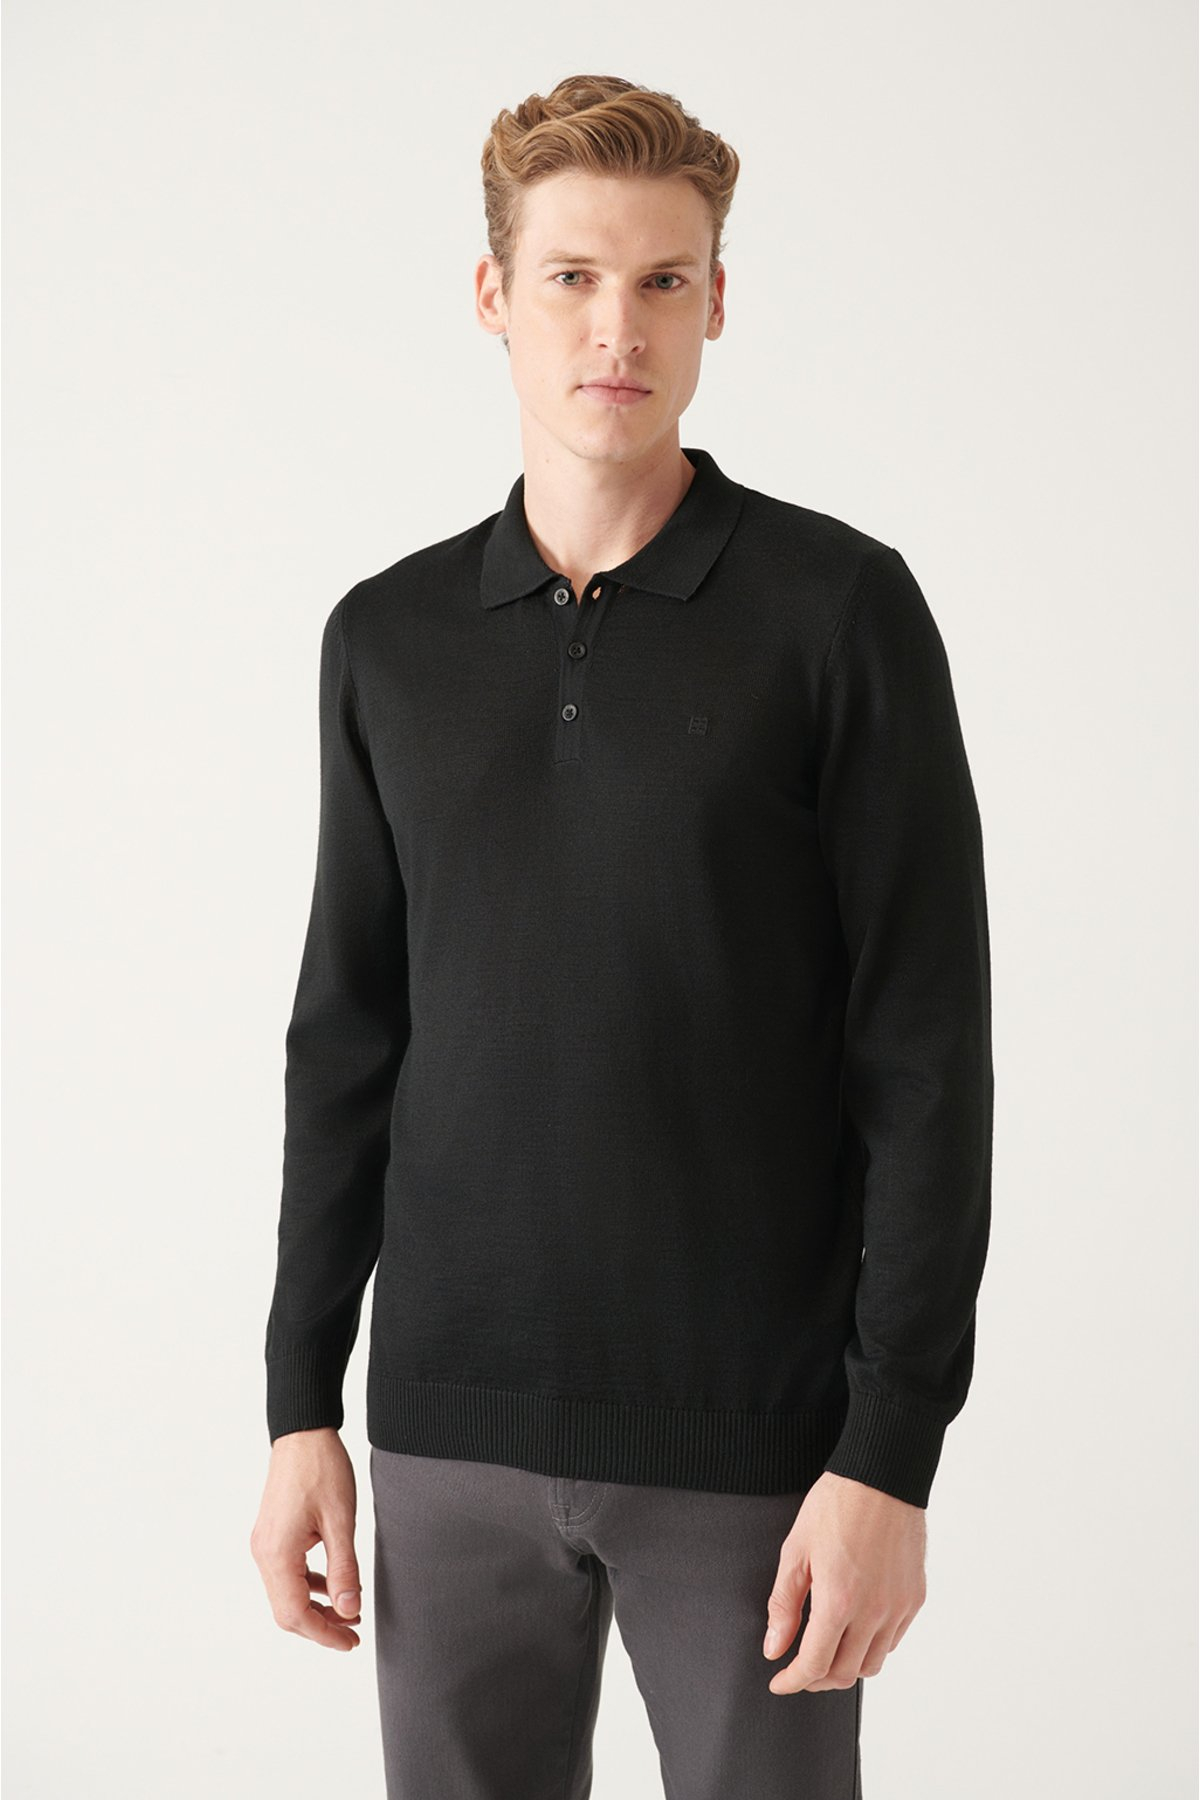 Avva Men's Black Polo Neck Wool Blended Standard Fit Normal Cut Knitwear Sweater